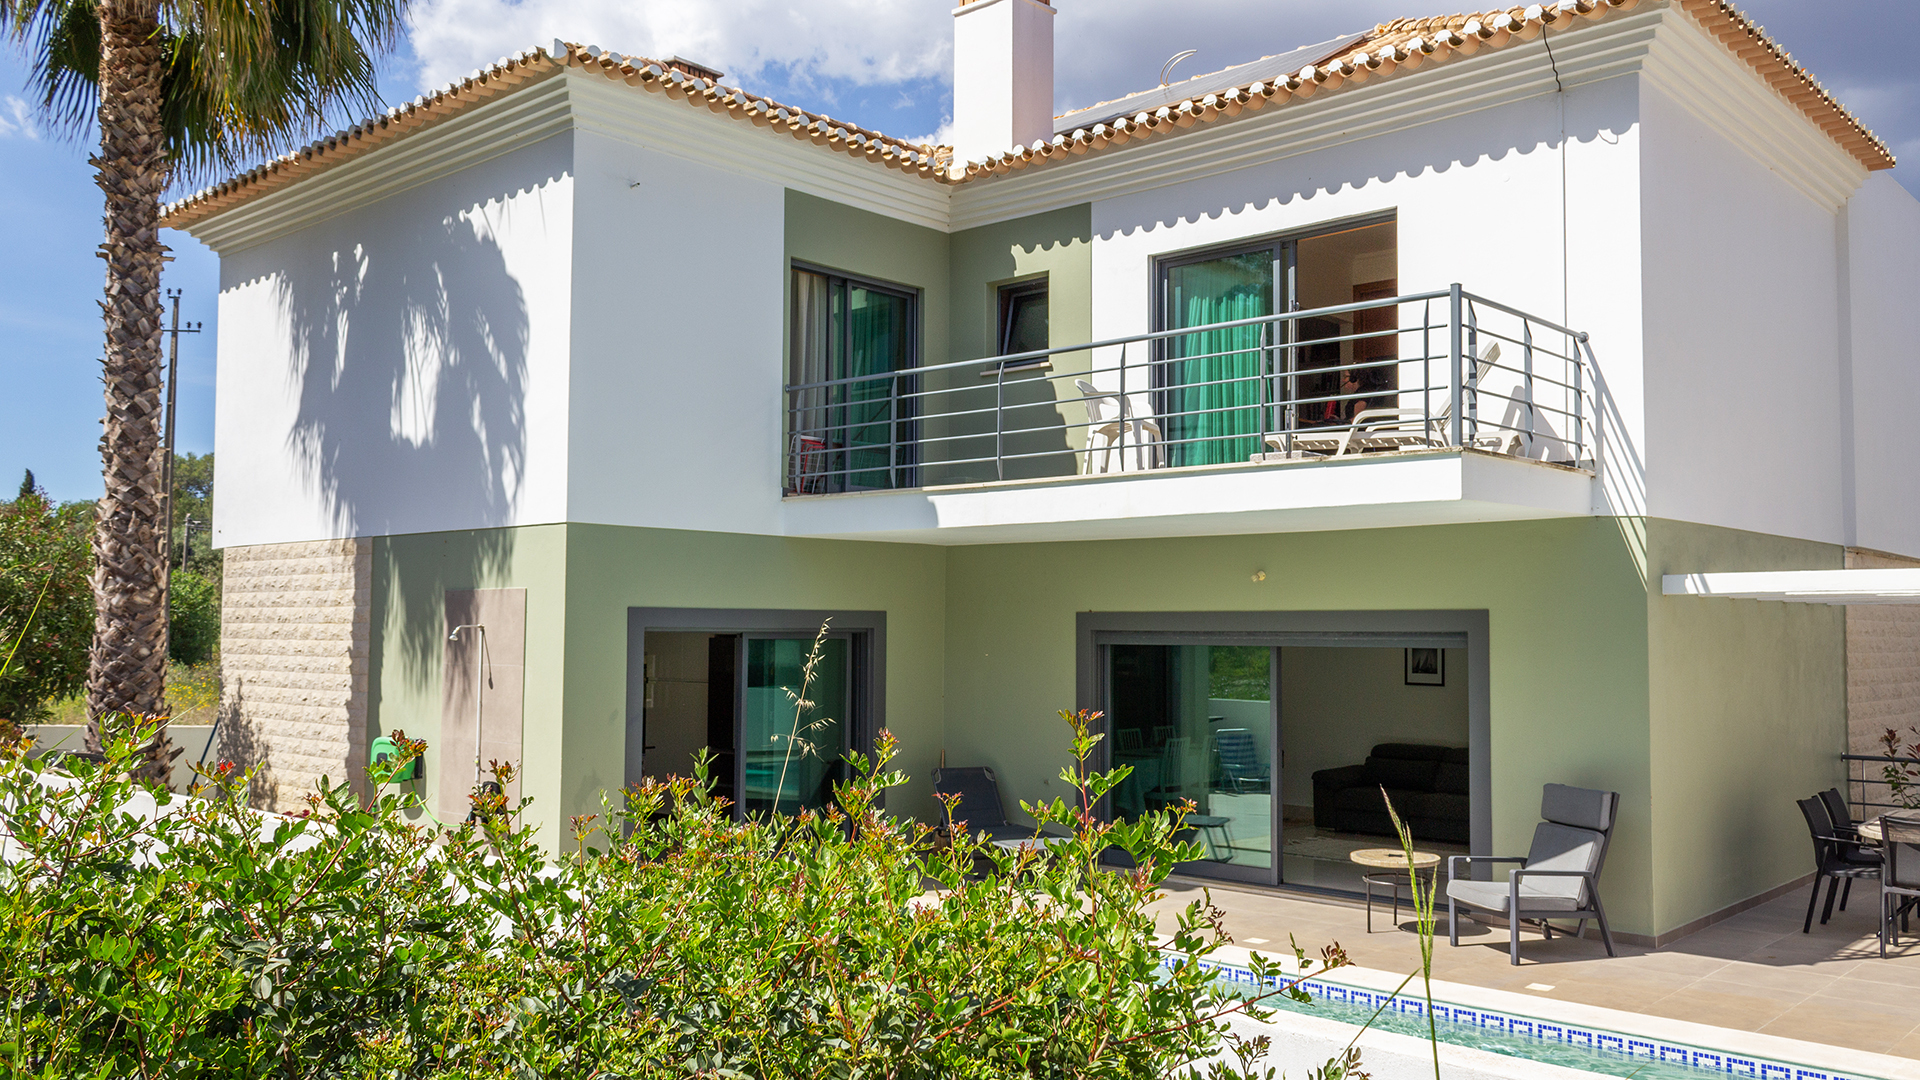 Villa immaculée avec piscine dans un endroit calme près de Praia do Vau et du terrain de golf d'Alto, Algarve Ouest | LG2235 Cette villa moderne de 4+1 chambres est située entre Alvor et Portimão dans un cul-de-sac tranquille près de Praia do Vau et du terrain de golf d'Alto. Elle est idéale pour une famille, pour une résidence permanente ou une maison de vacances, car elle est proche de toutes les commodités et de la célèbre plage de Praia da Rocha.